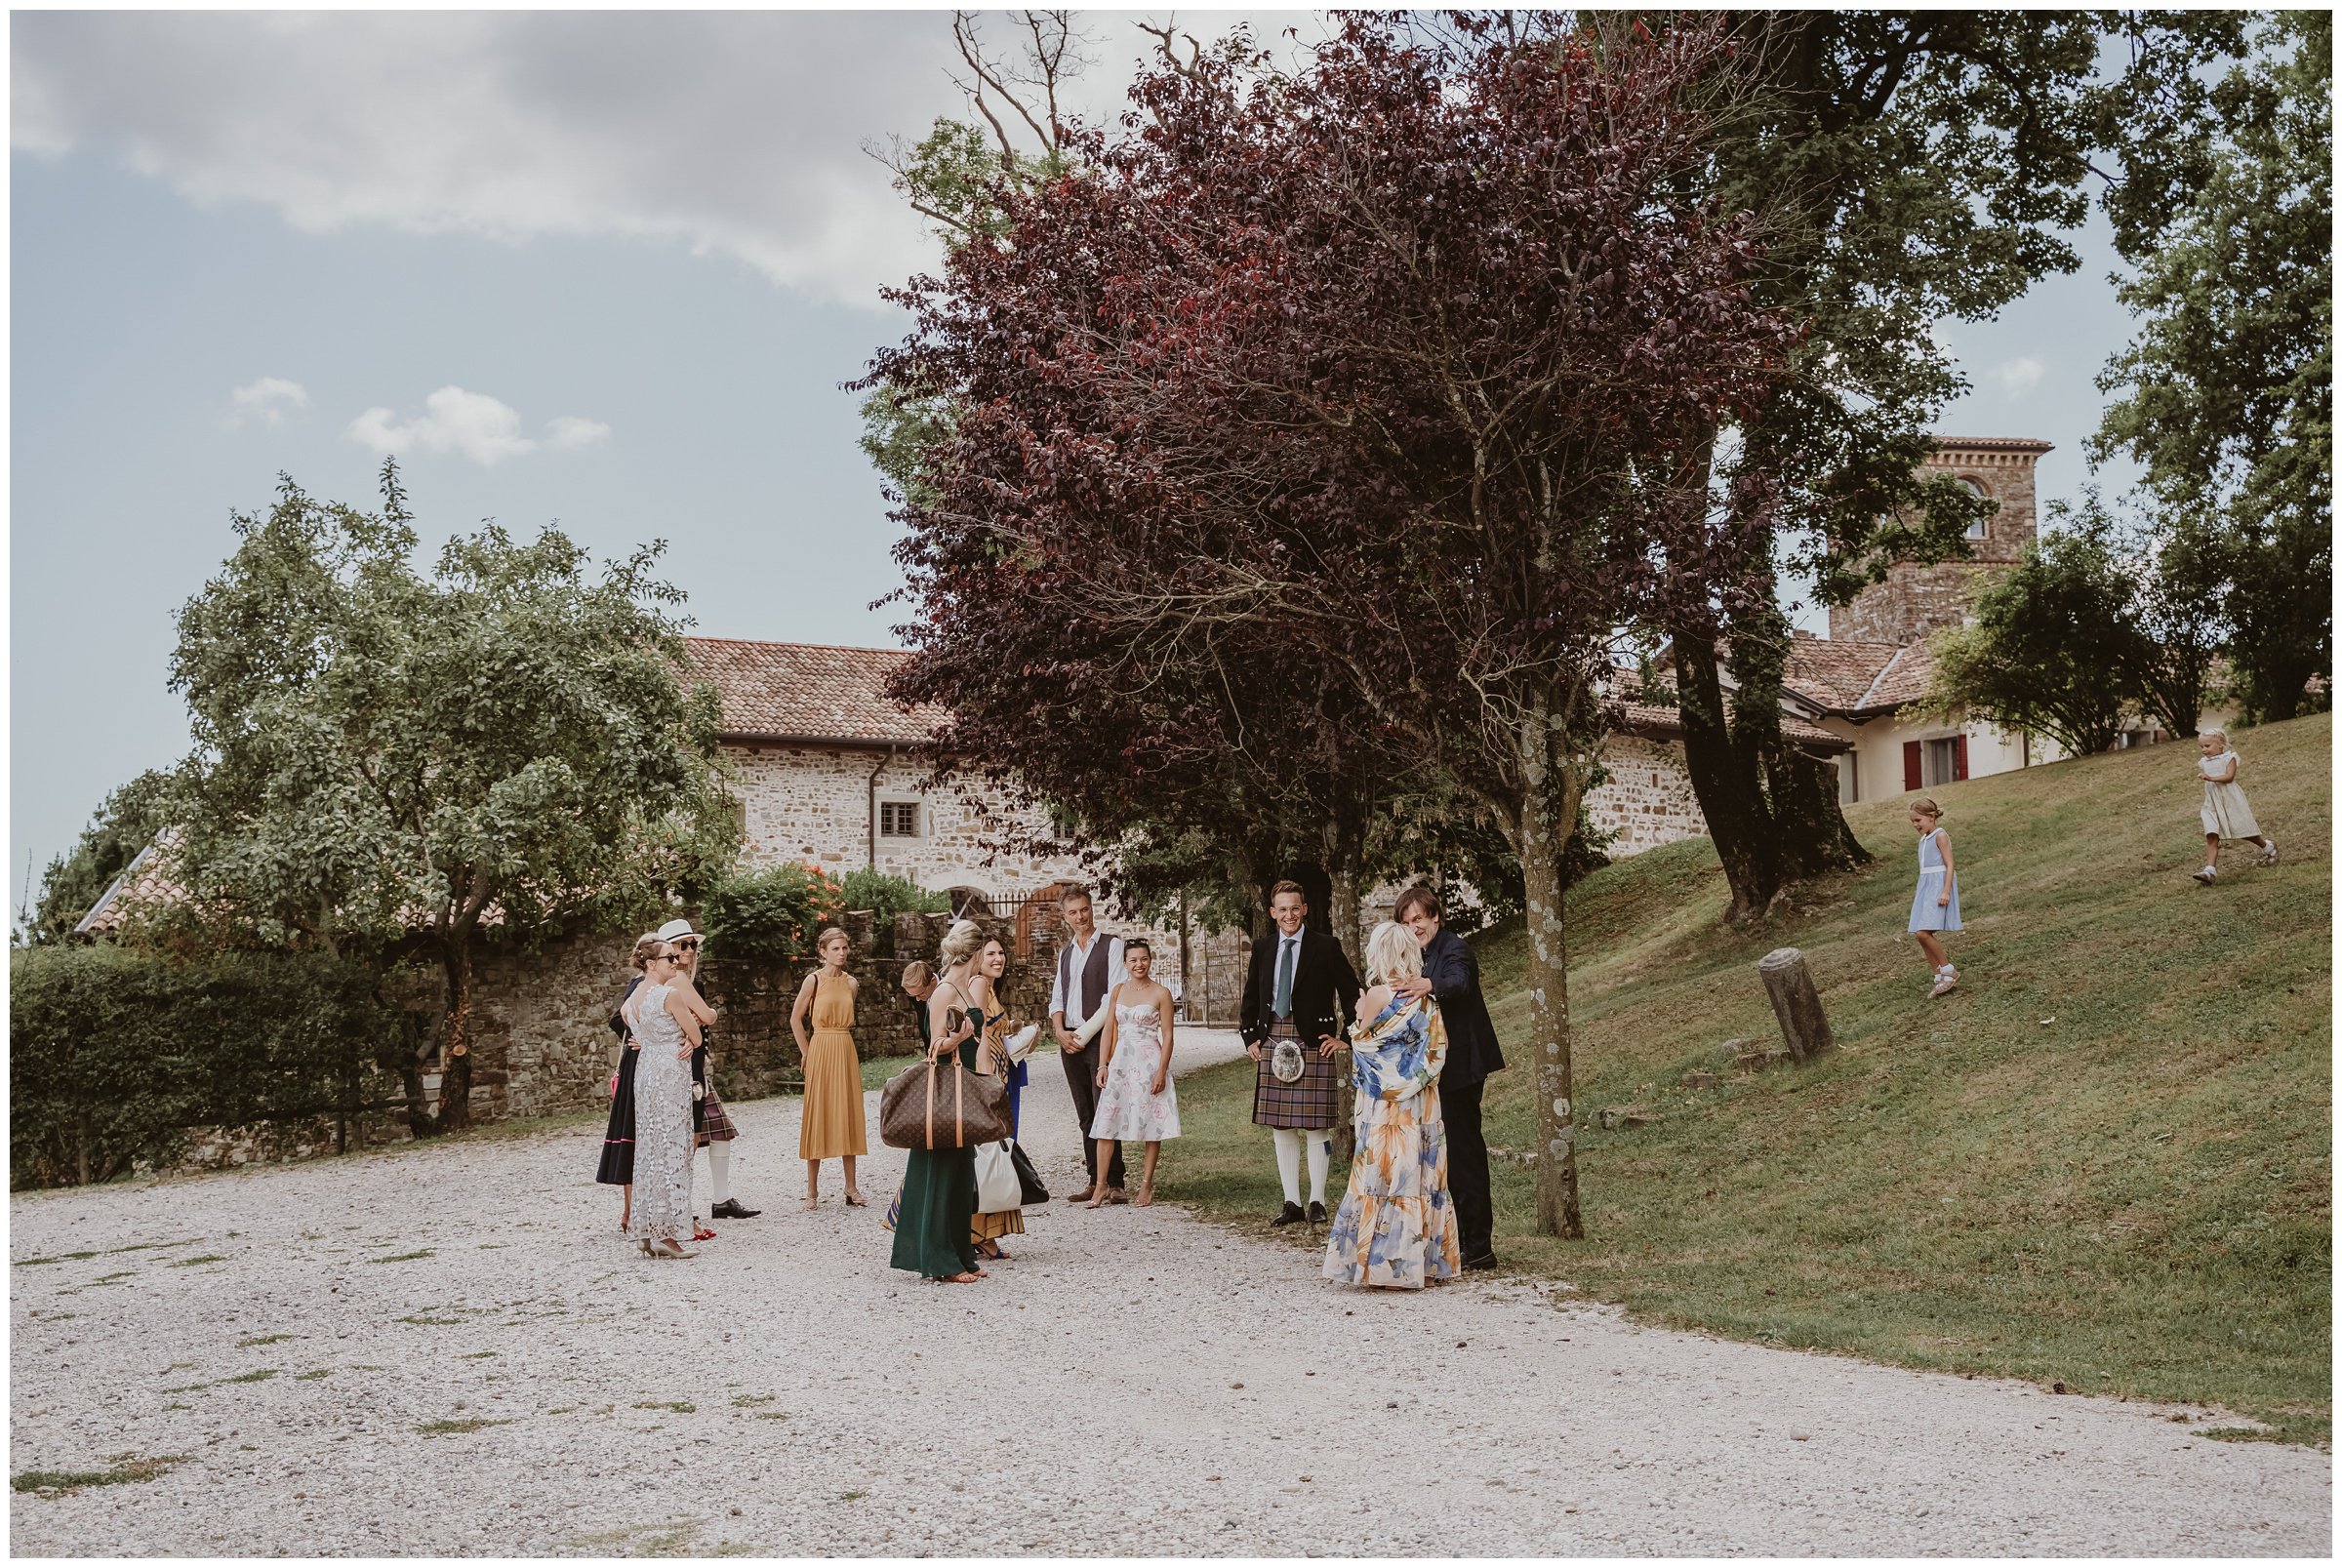 Matrimonio-castello-buttrio-fotografo-matrimonio-treviso-fotografo-matrimonio-venezia-11.jpg